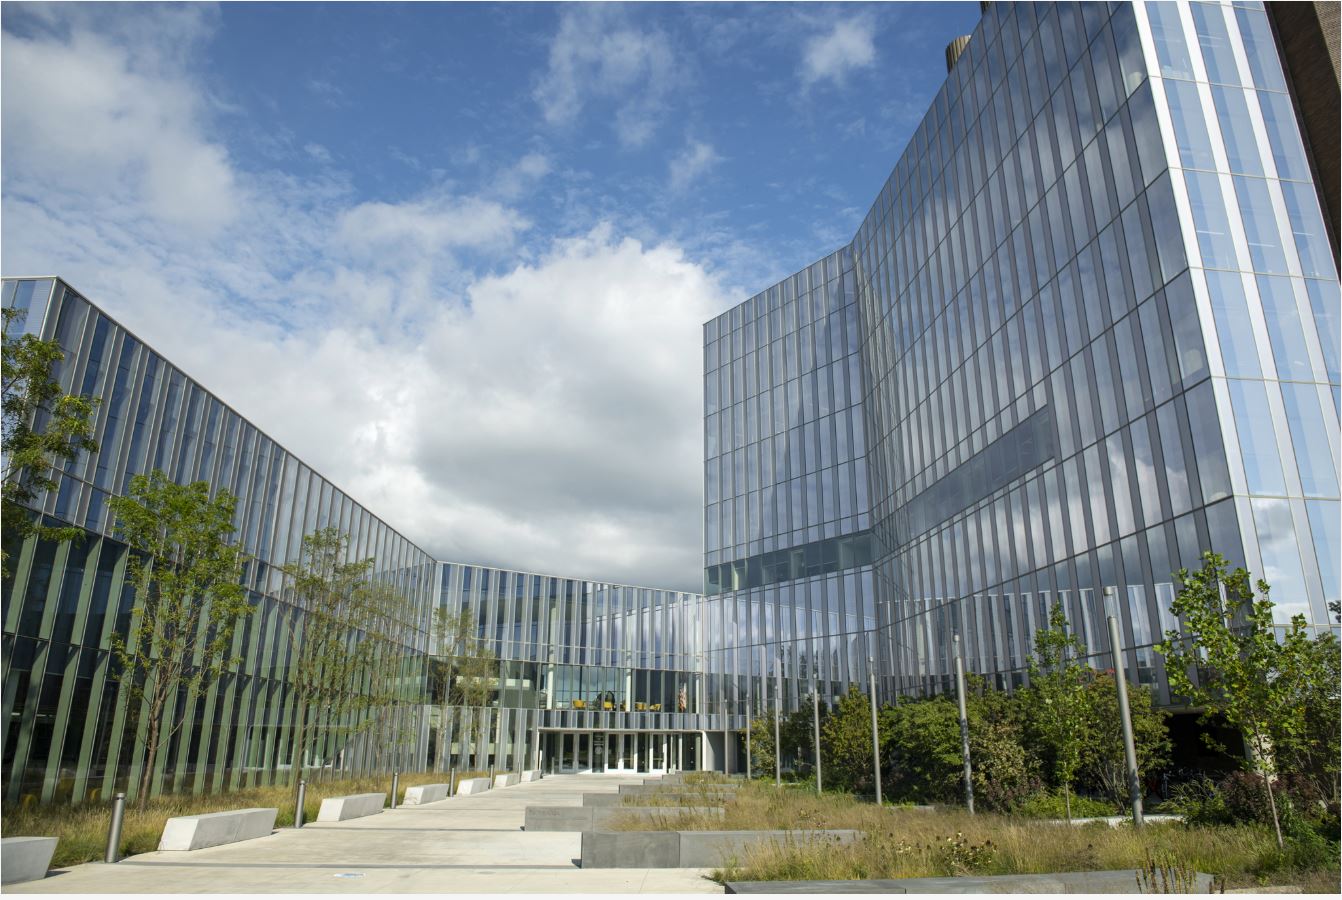 External view of CVM building